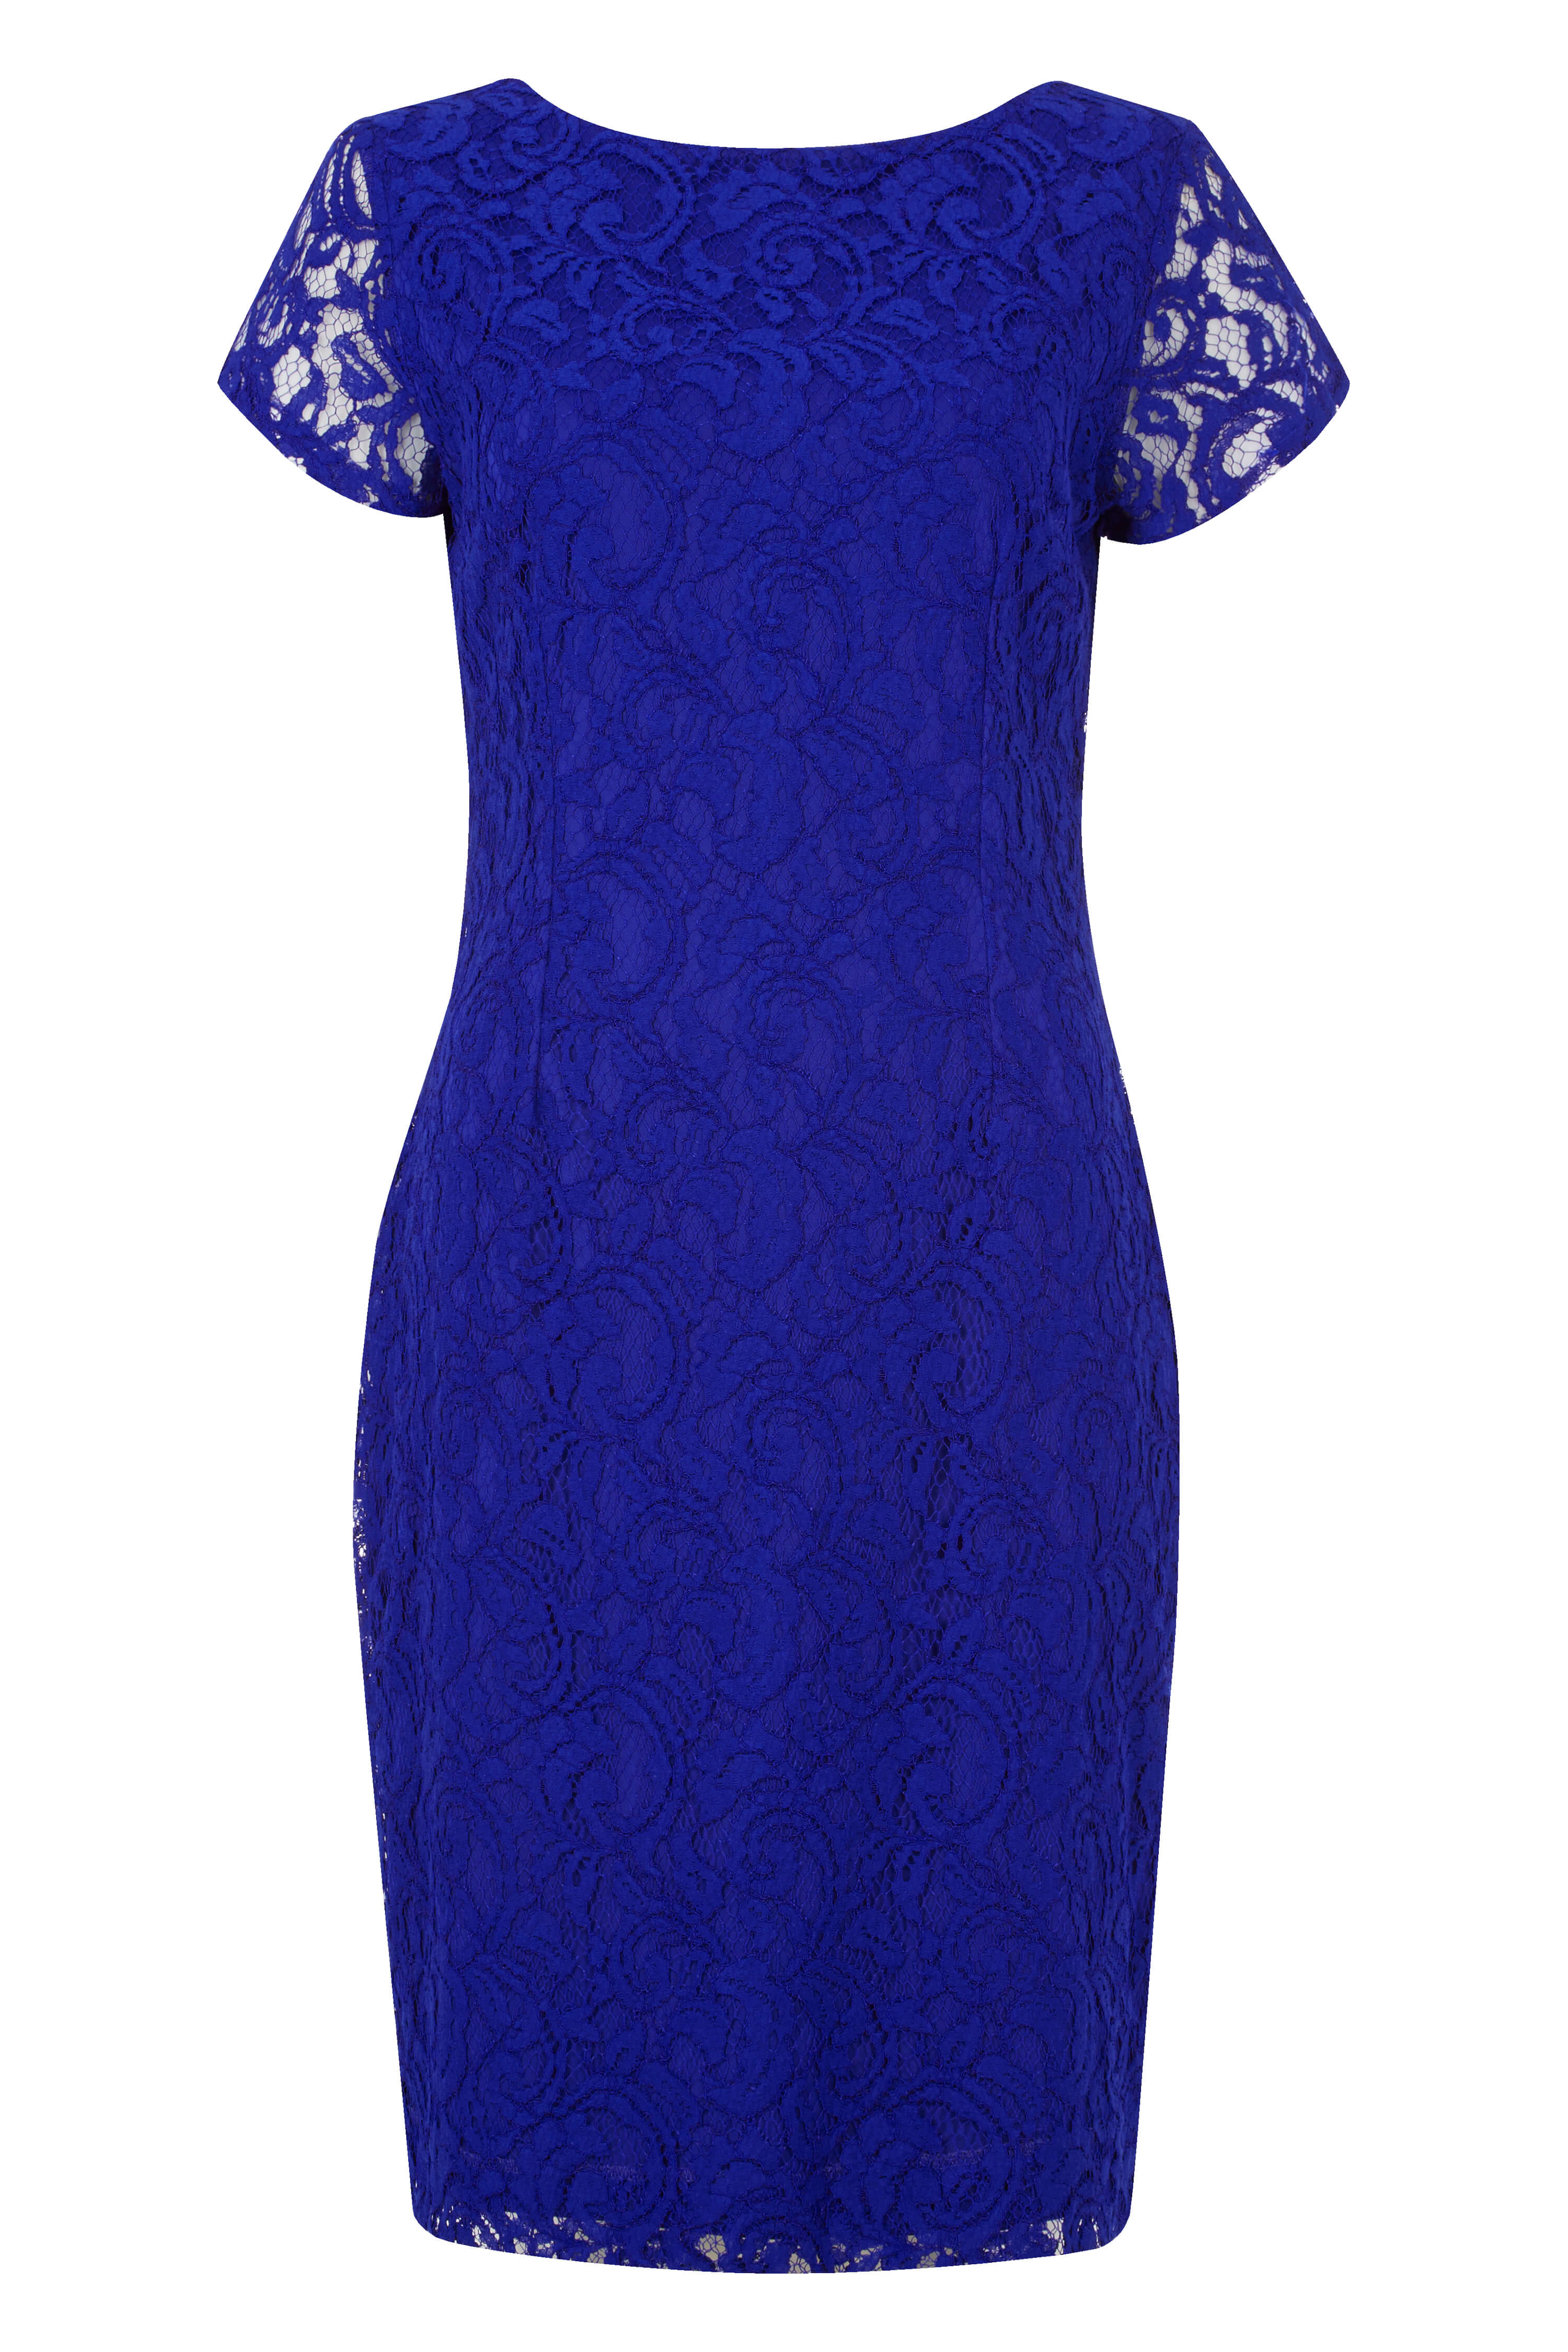 Royal Blue Online Exclusive Lace V Back Dress, Image 4 of 4